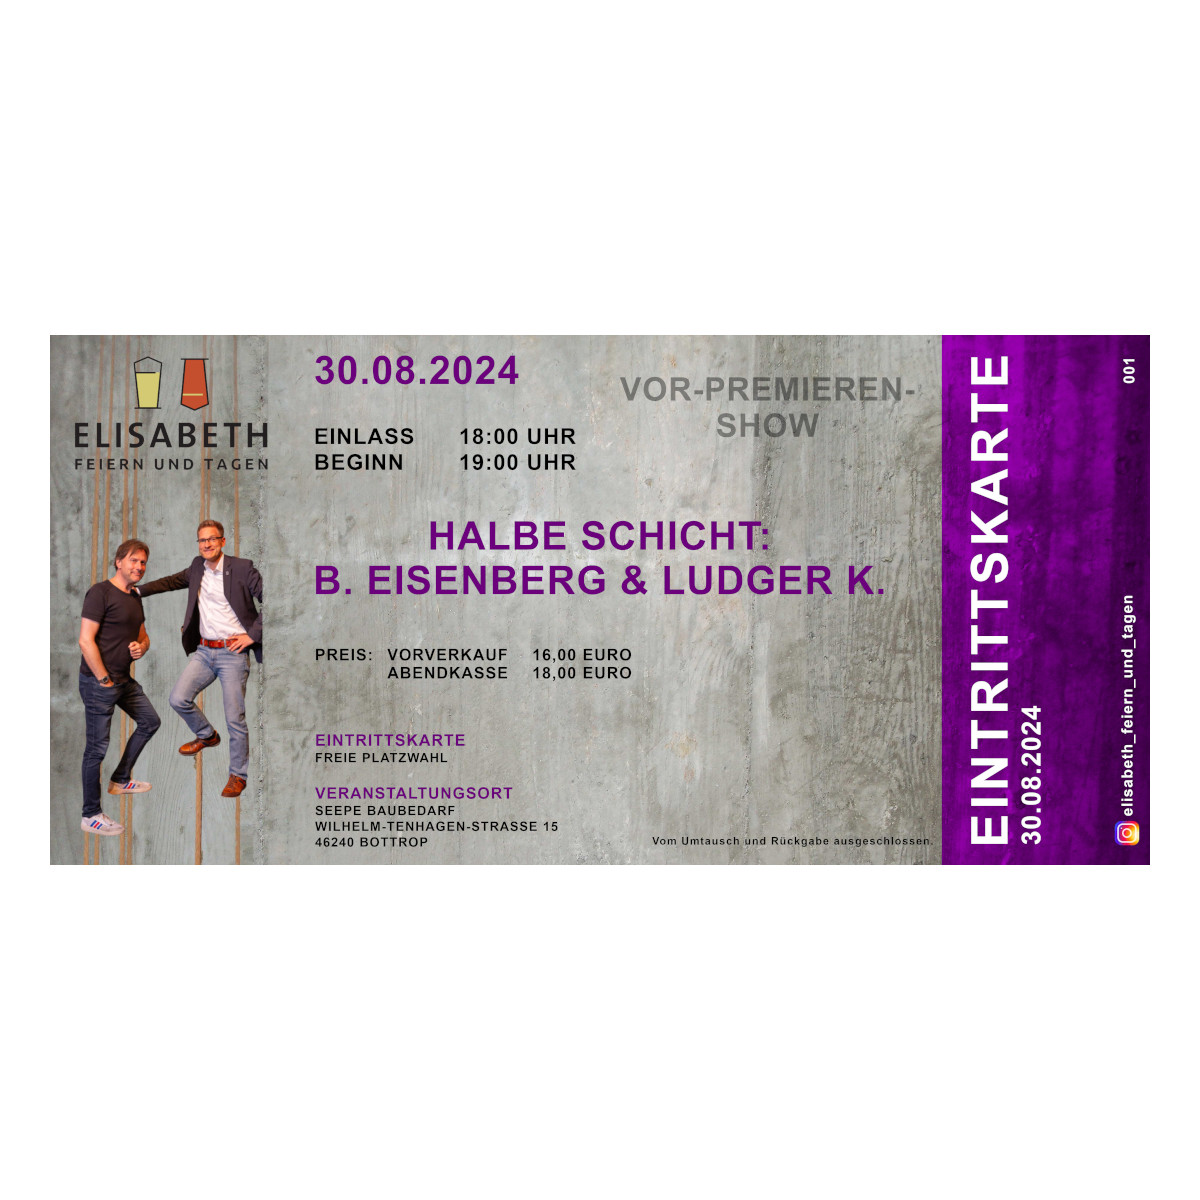 30.08.2024 Eintrittskarte "Halbe Schicht" B.Eisenberg & Ludger K. 